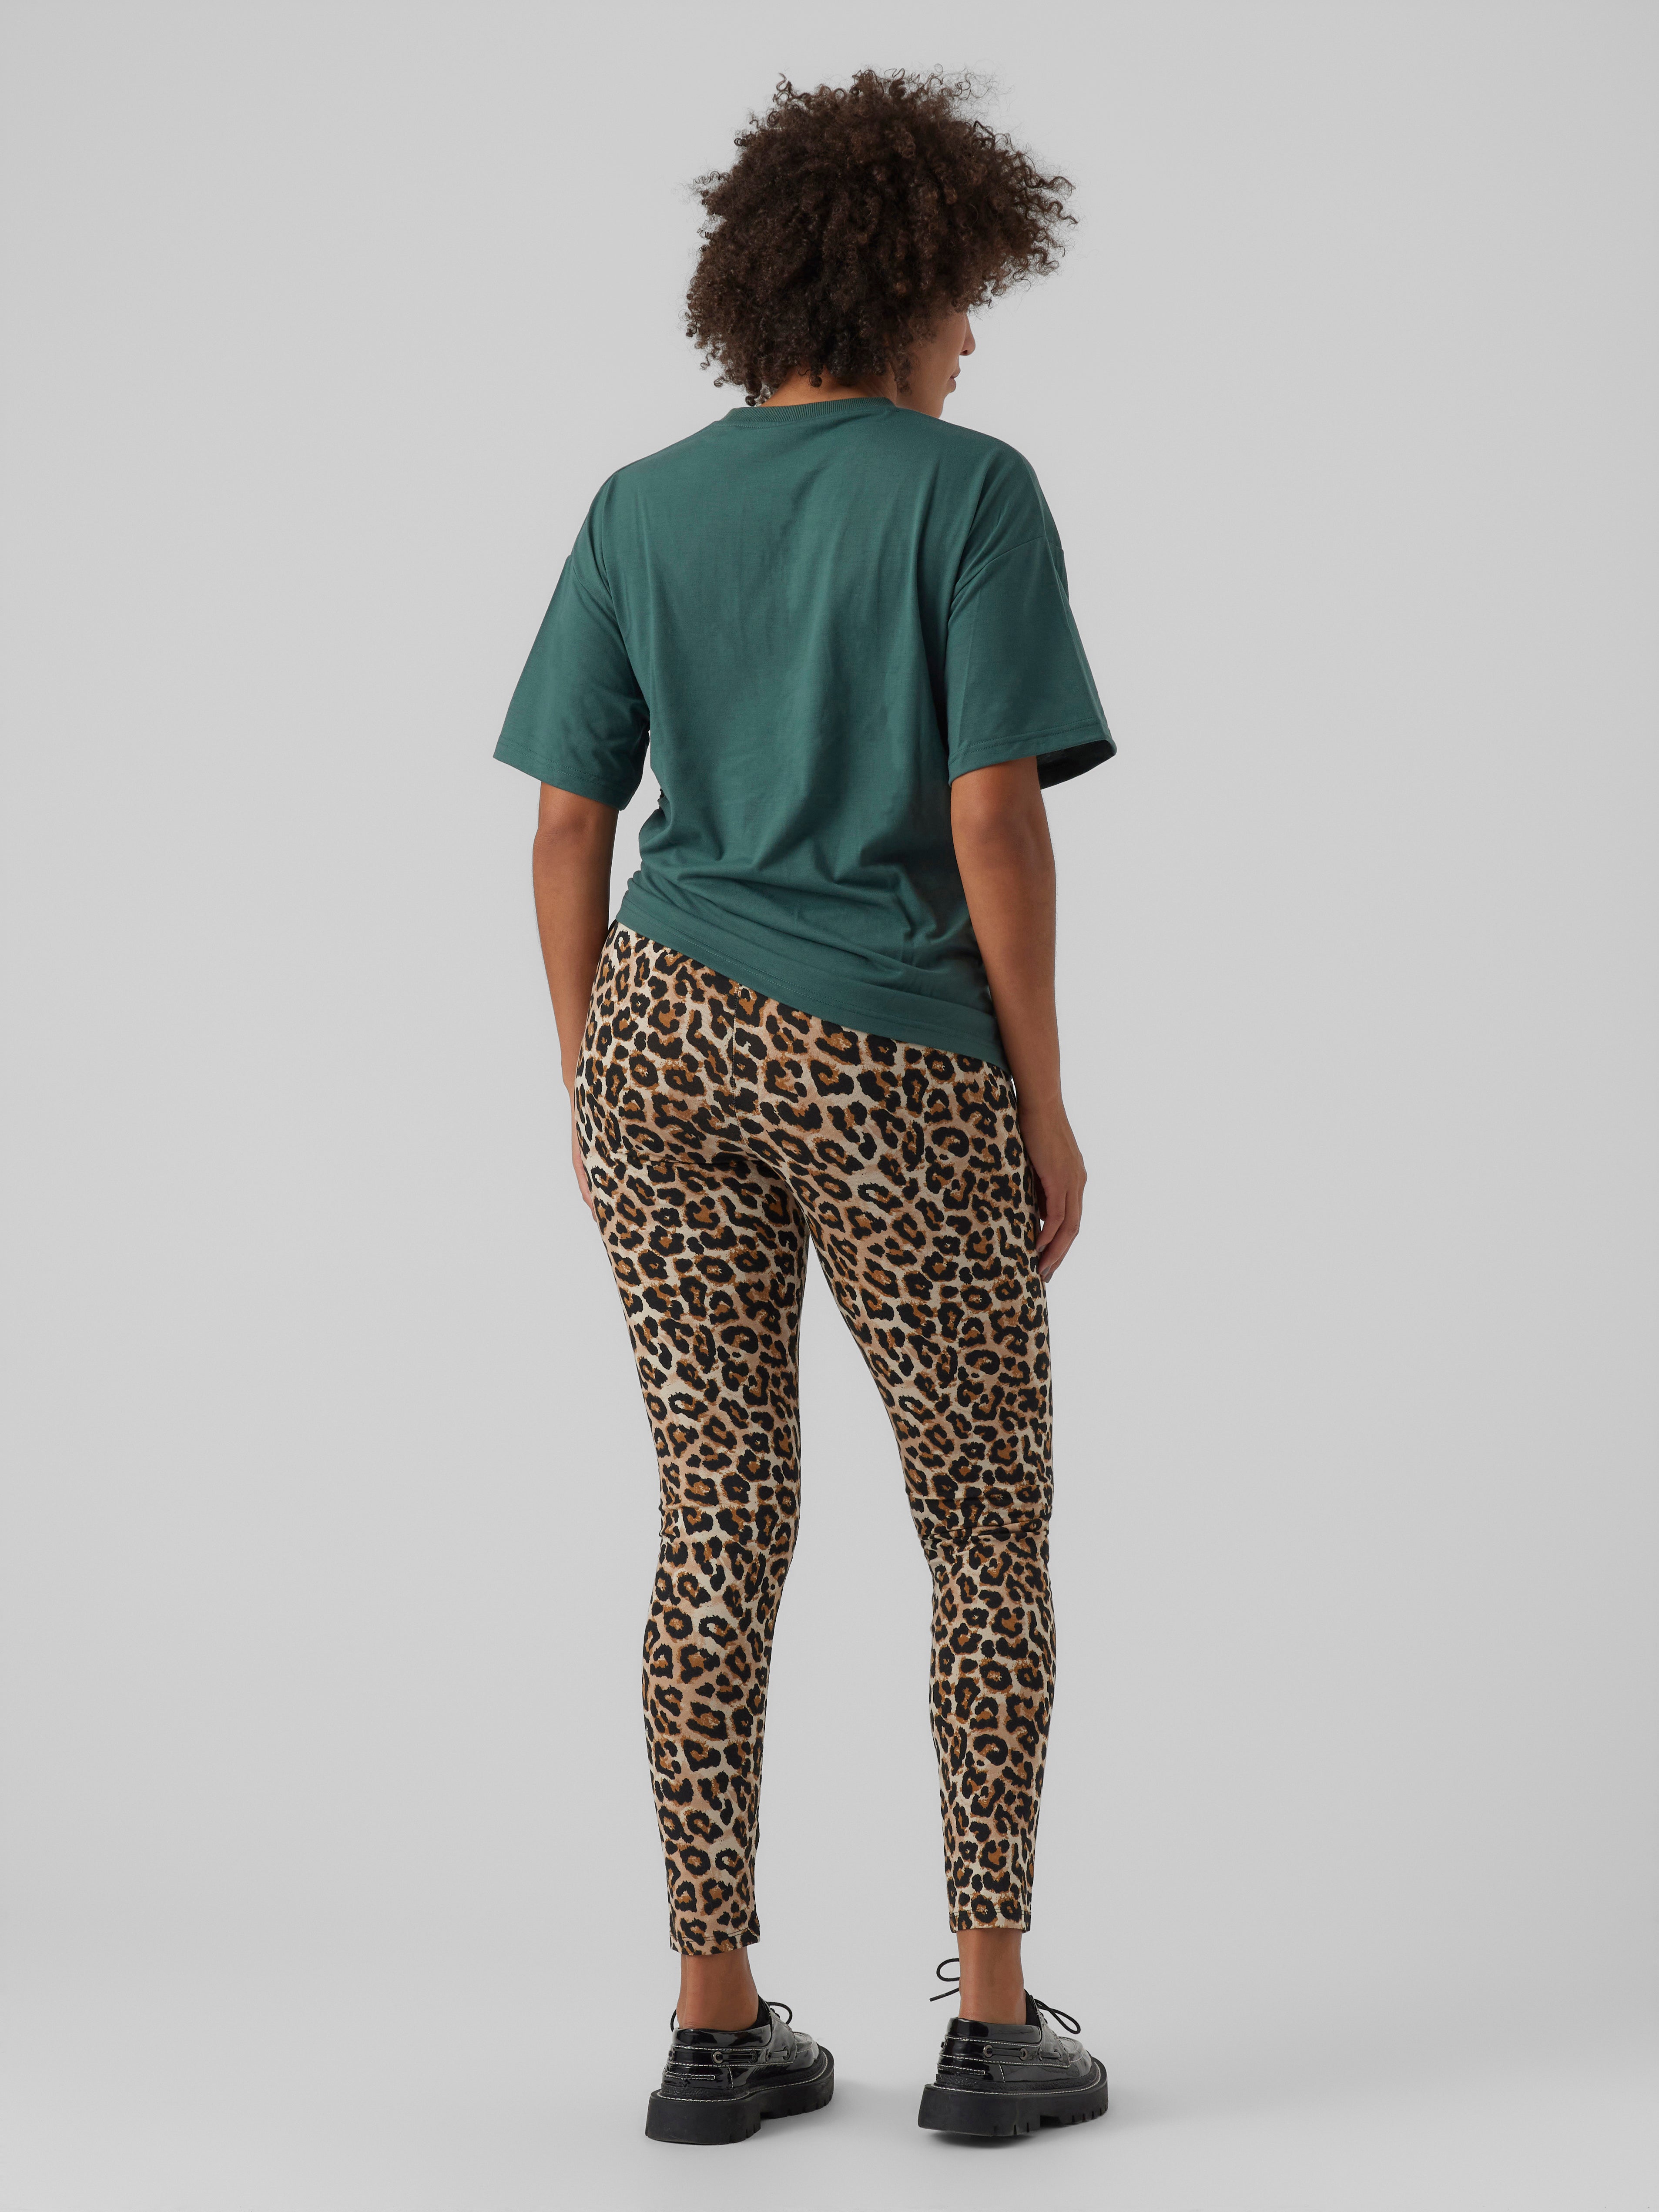 Mama leopard printed Leggings, Black